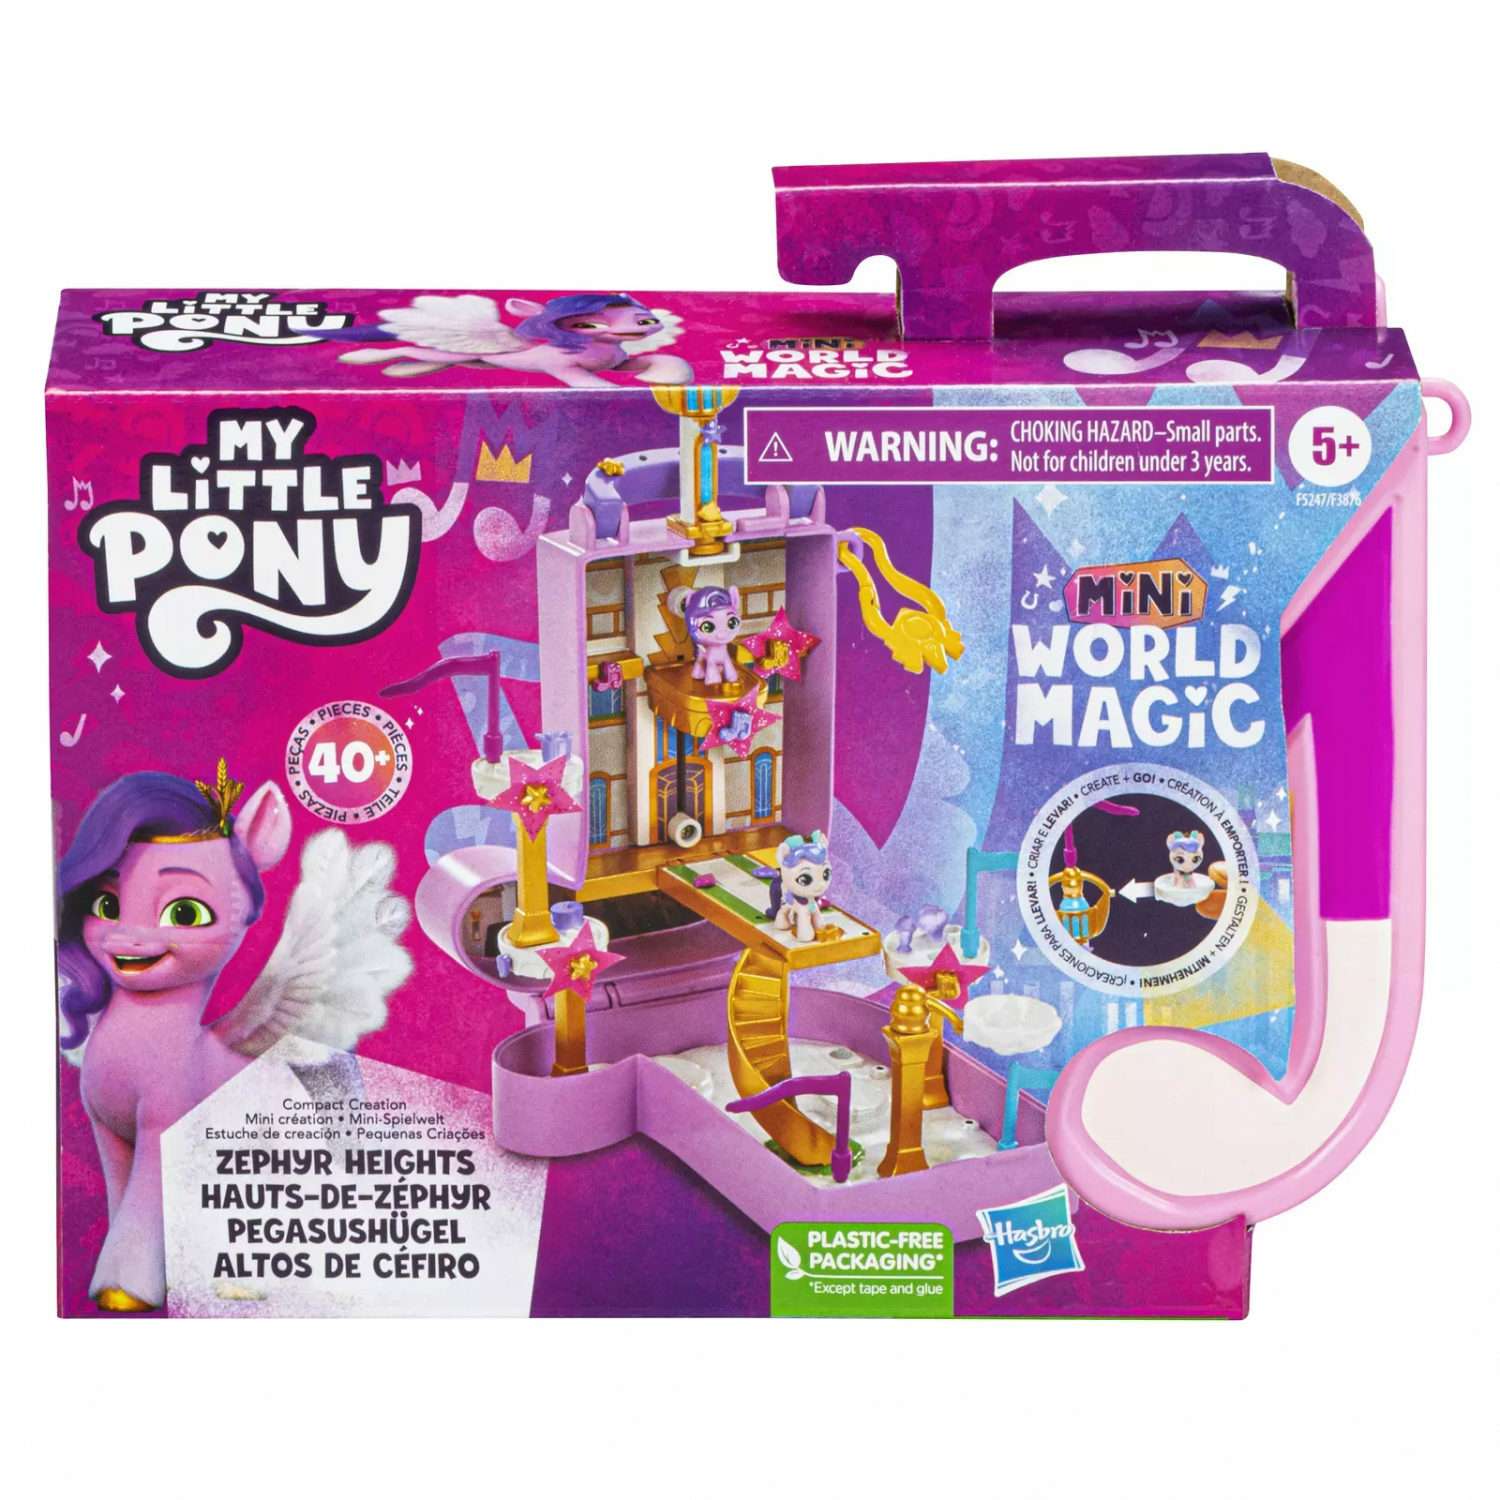 My little Pony Mini World Magic Compact. My little Pony мини магический сюрприз e9100. Игровой набор "магия".